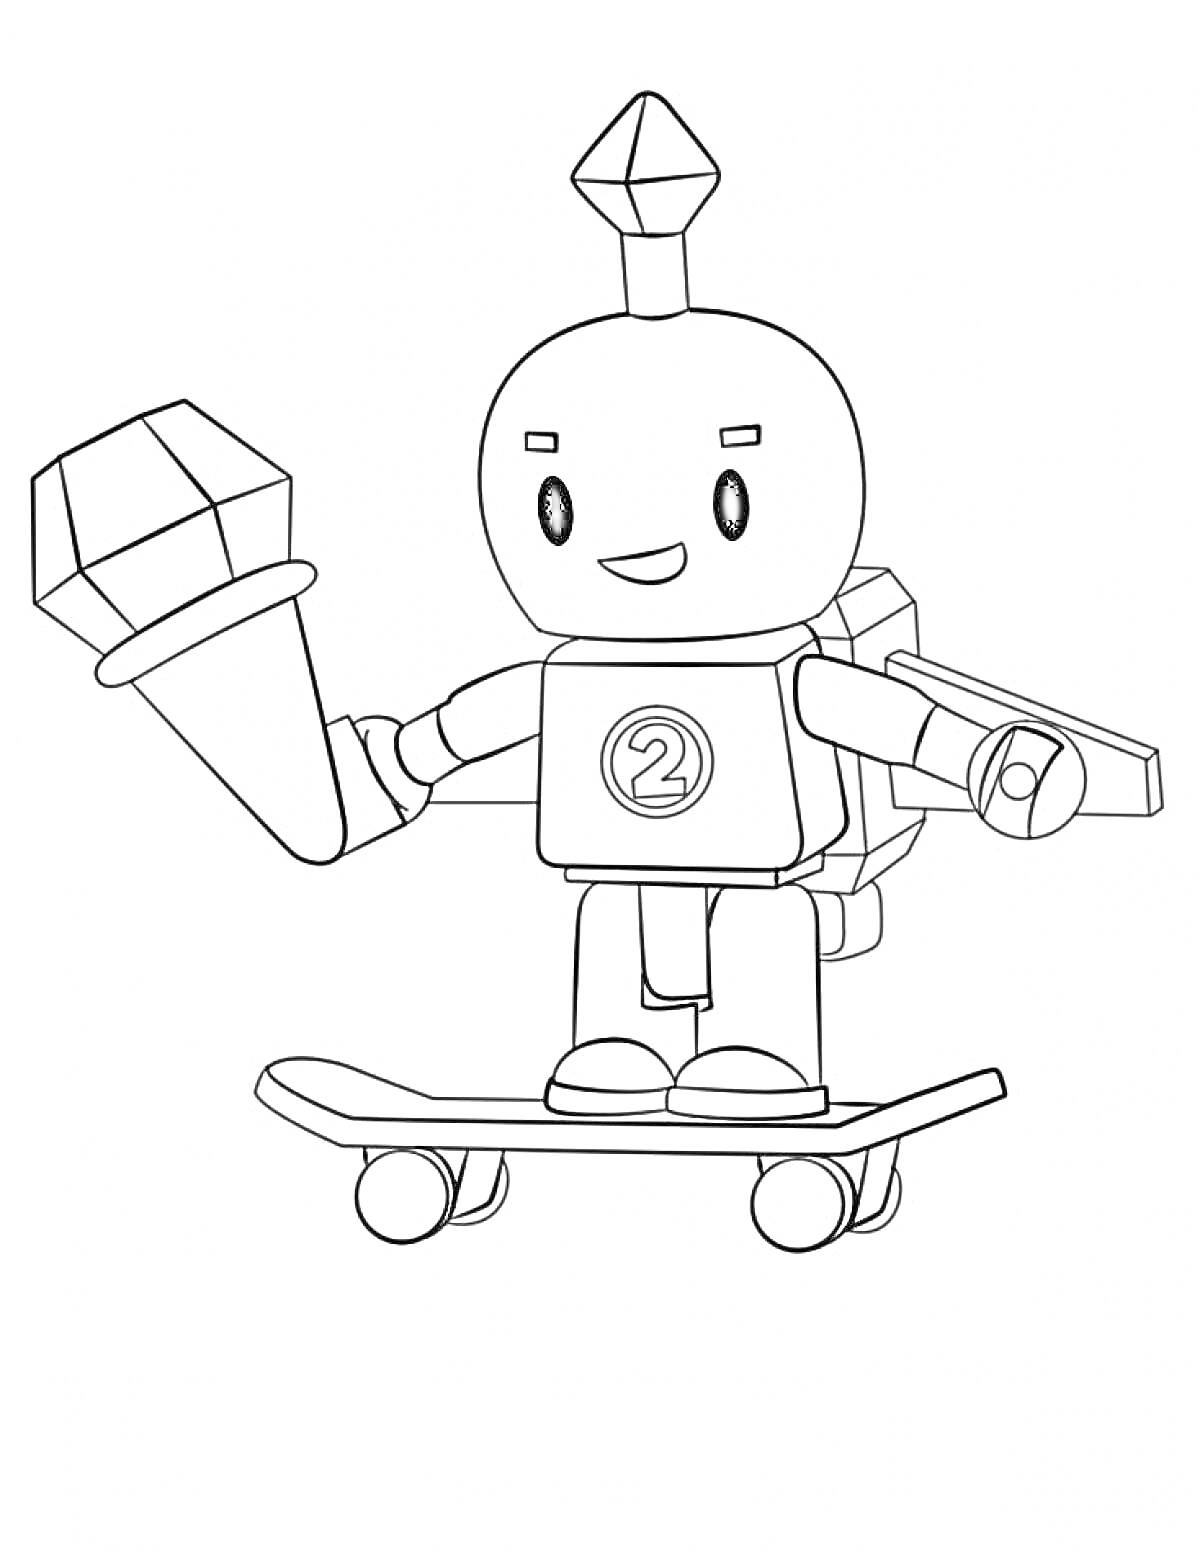 Раскраска Роблокс персонаж на скейтборде с кристаллом и рюкзаком с крыльями